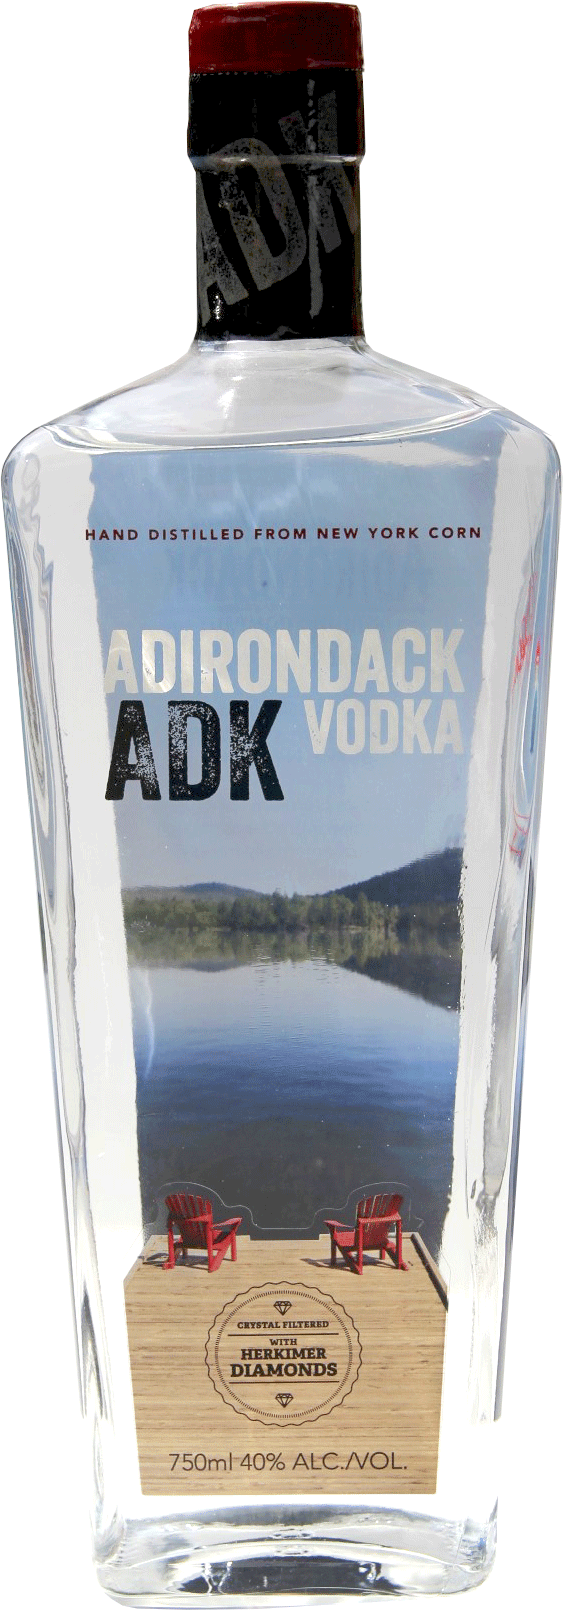  Best Vodka Label Logo: Adirondack Vodka